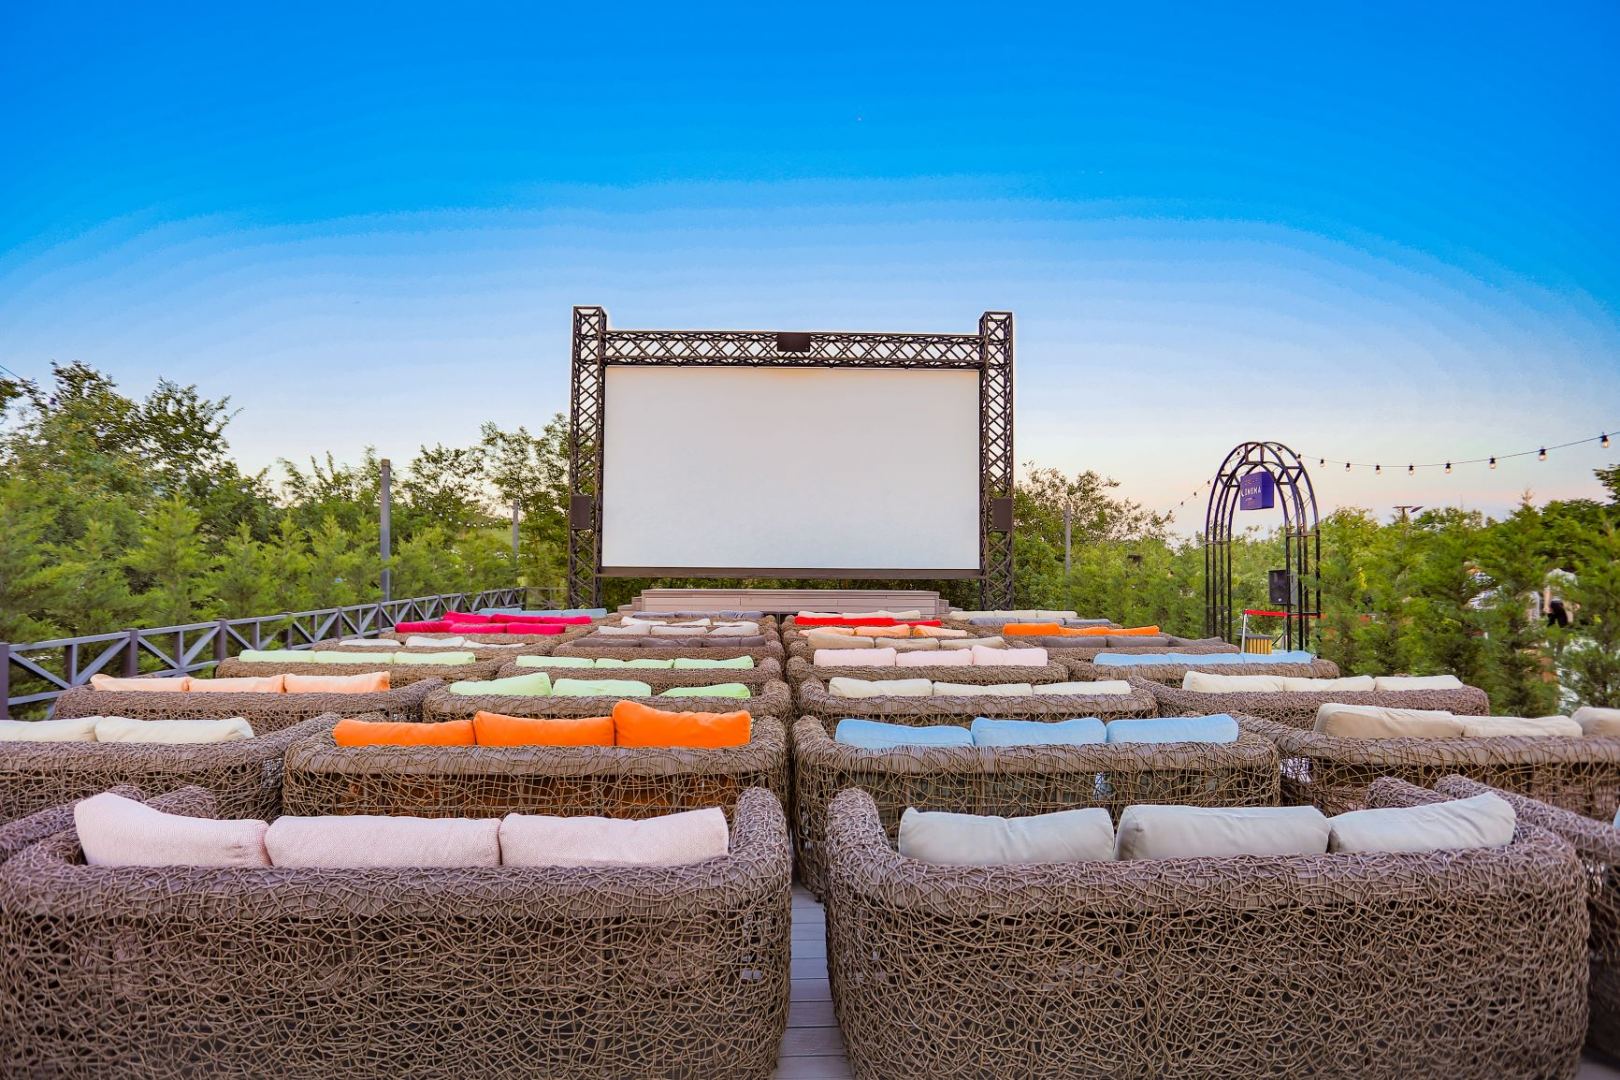 CinemaPlus открыл новый кинотеатр под открытым небом (ВИДЕО, ФОТО)